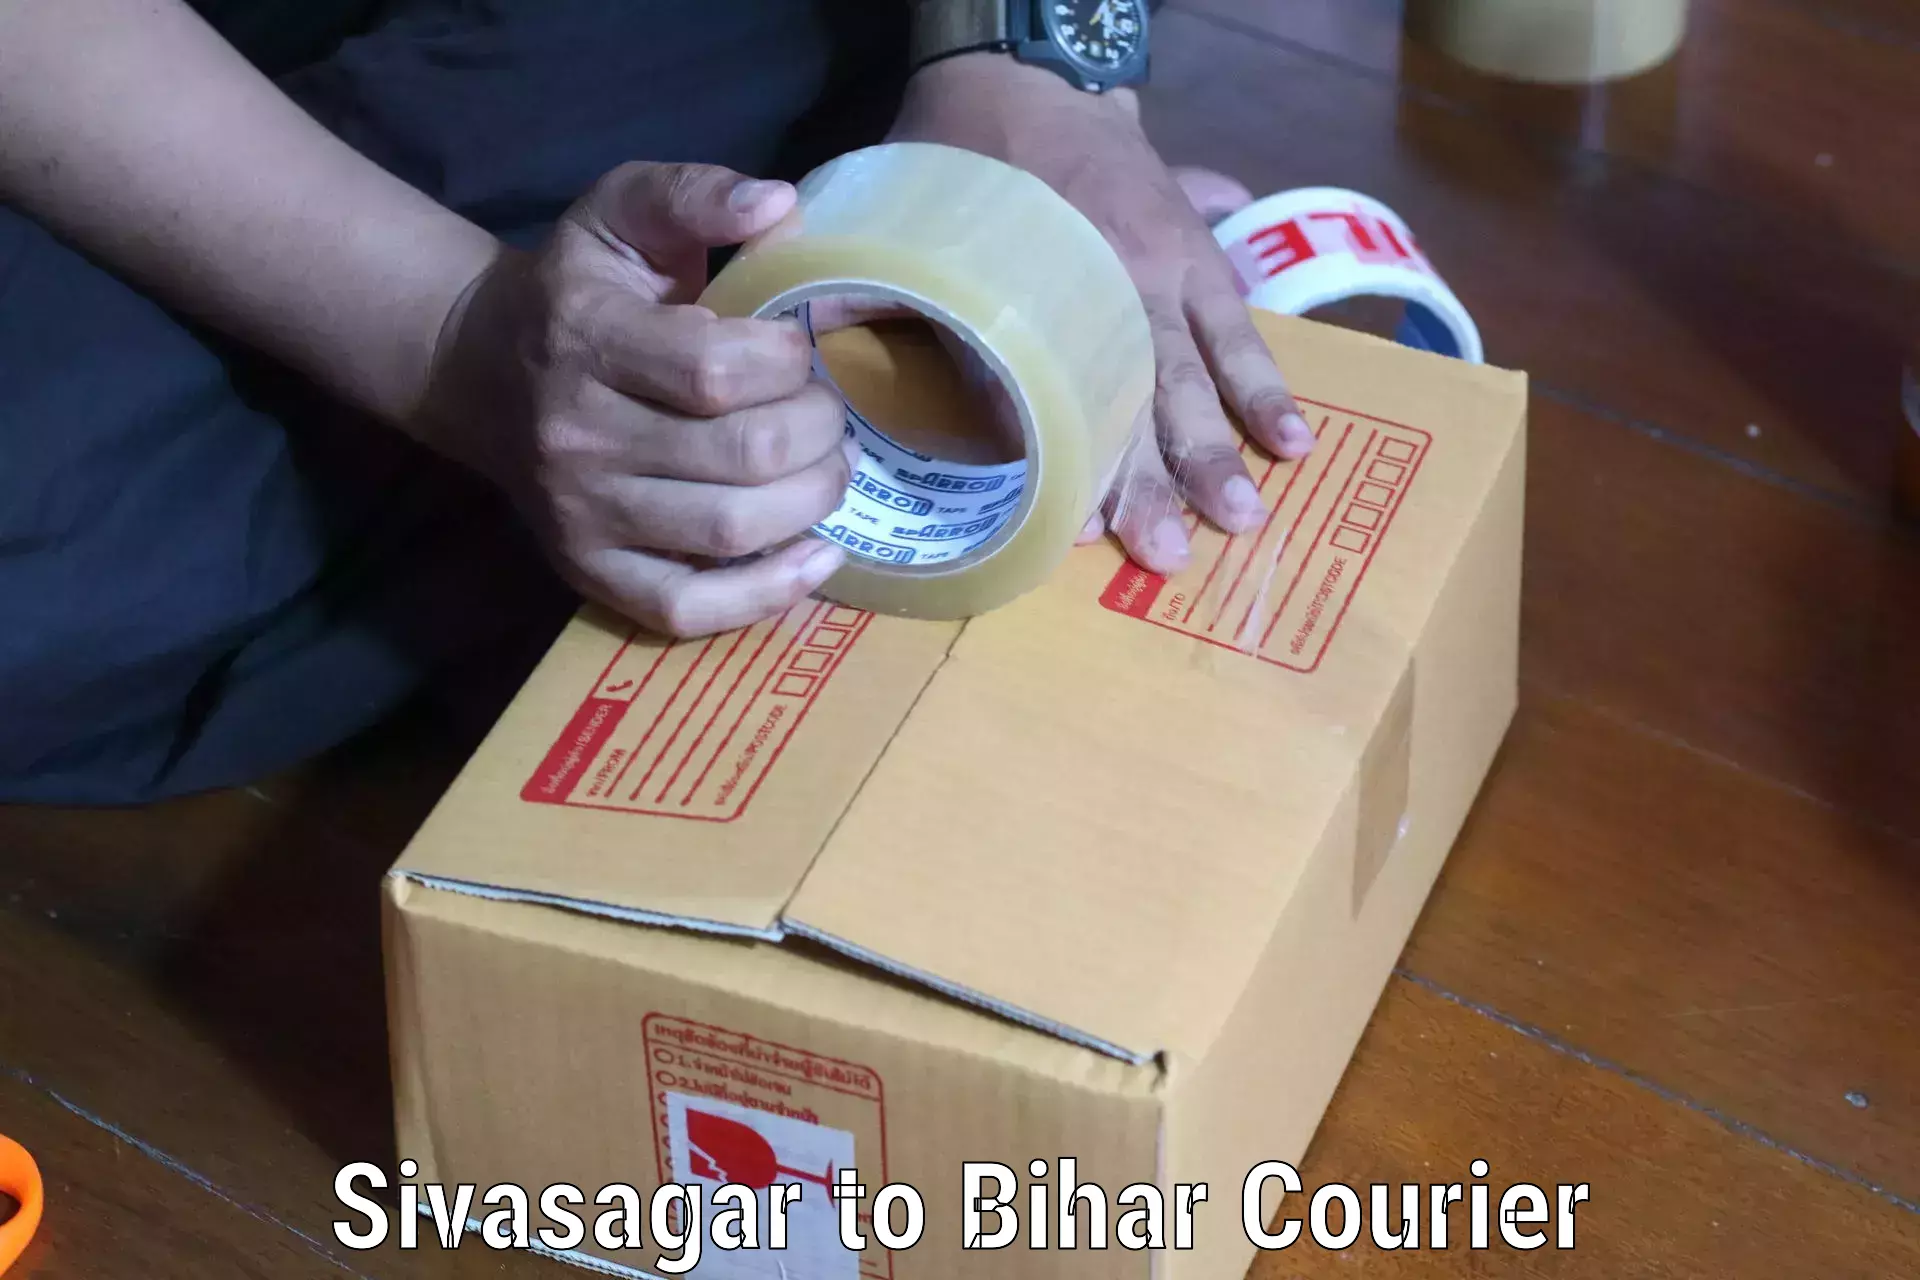 Lightweight courier Sivasagar to Sheikhpura